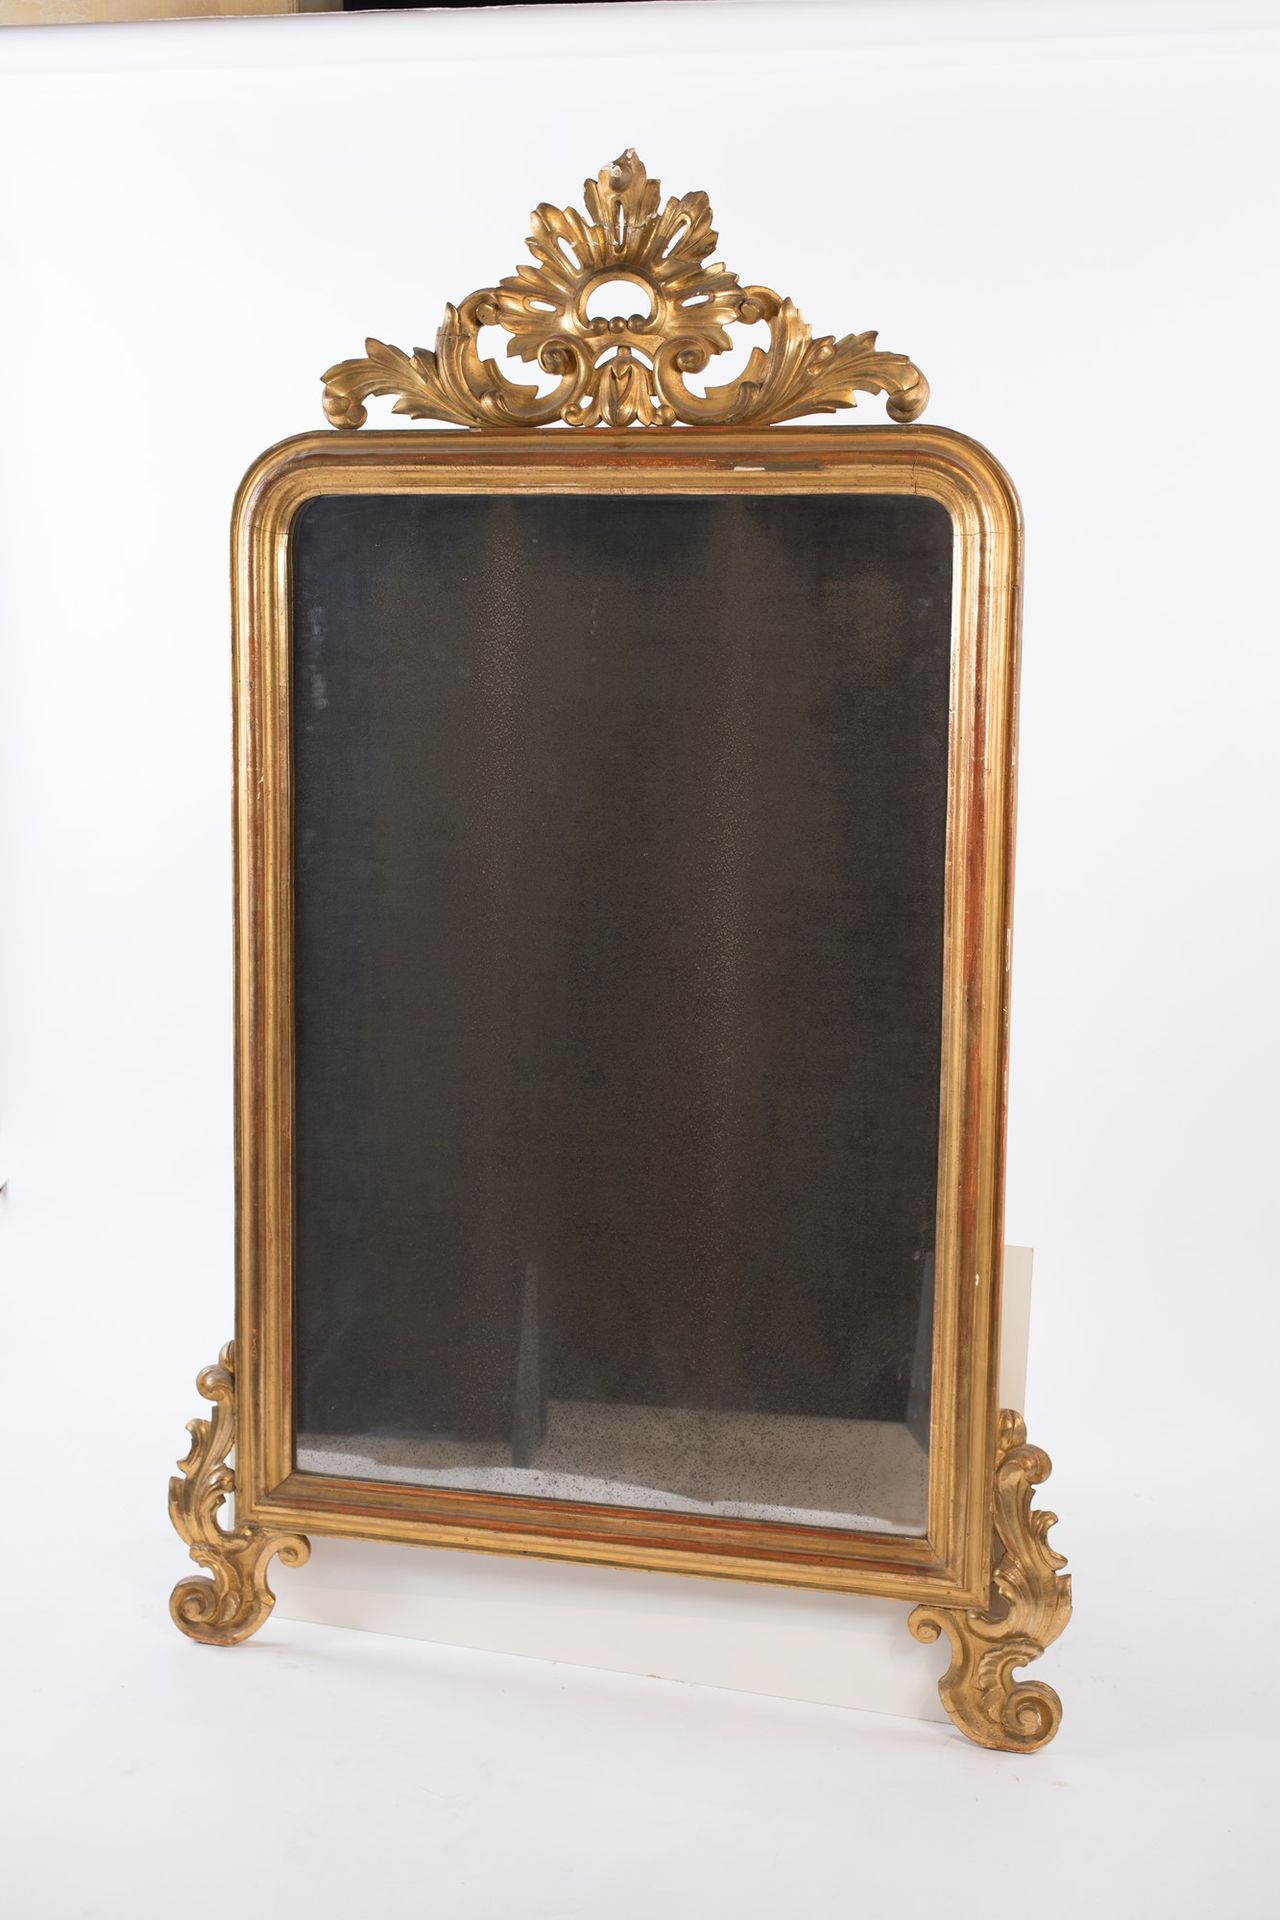 Napoleon III period gilded wood mirror avec cadre mouluré en bois doré soutenu p&hellip;